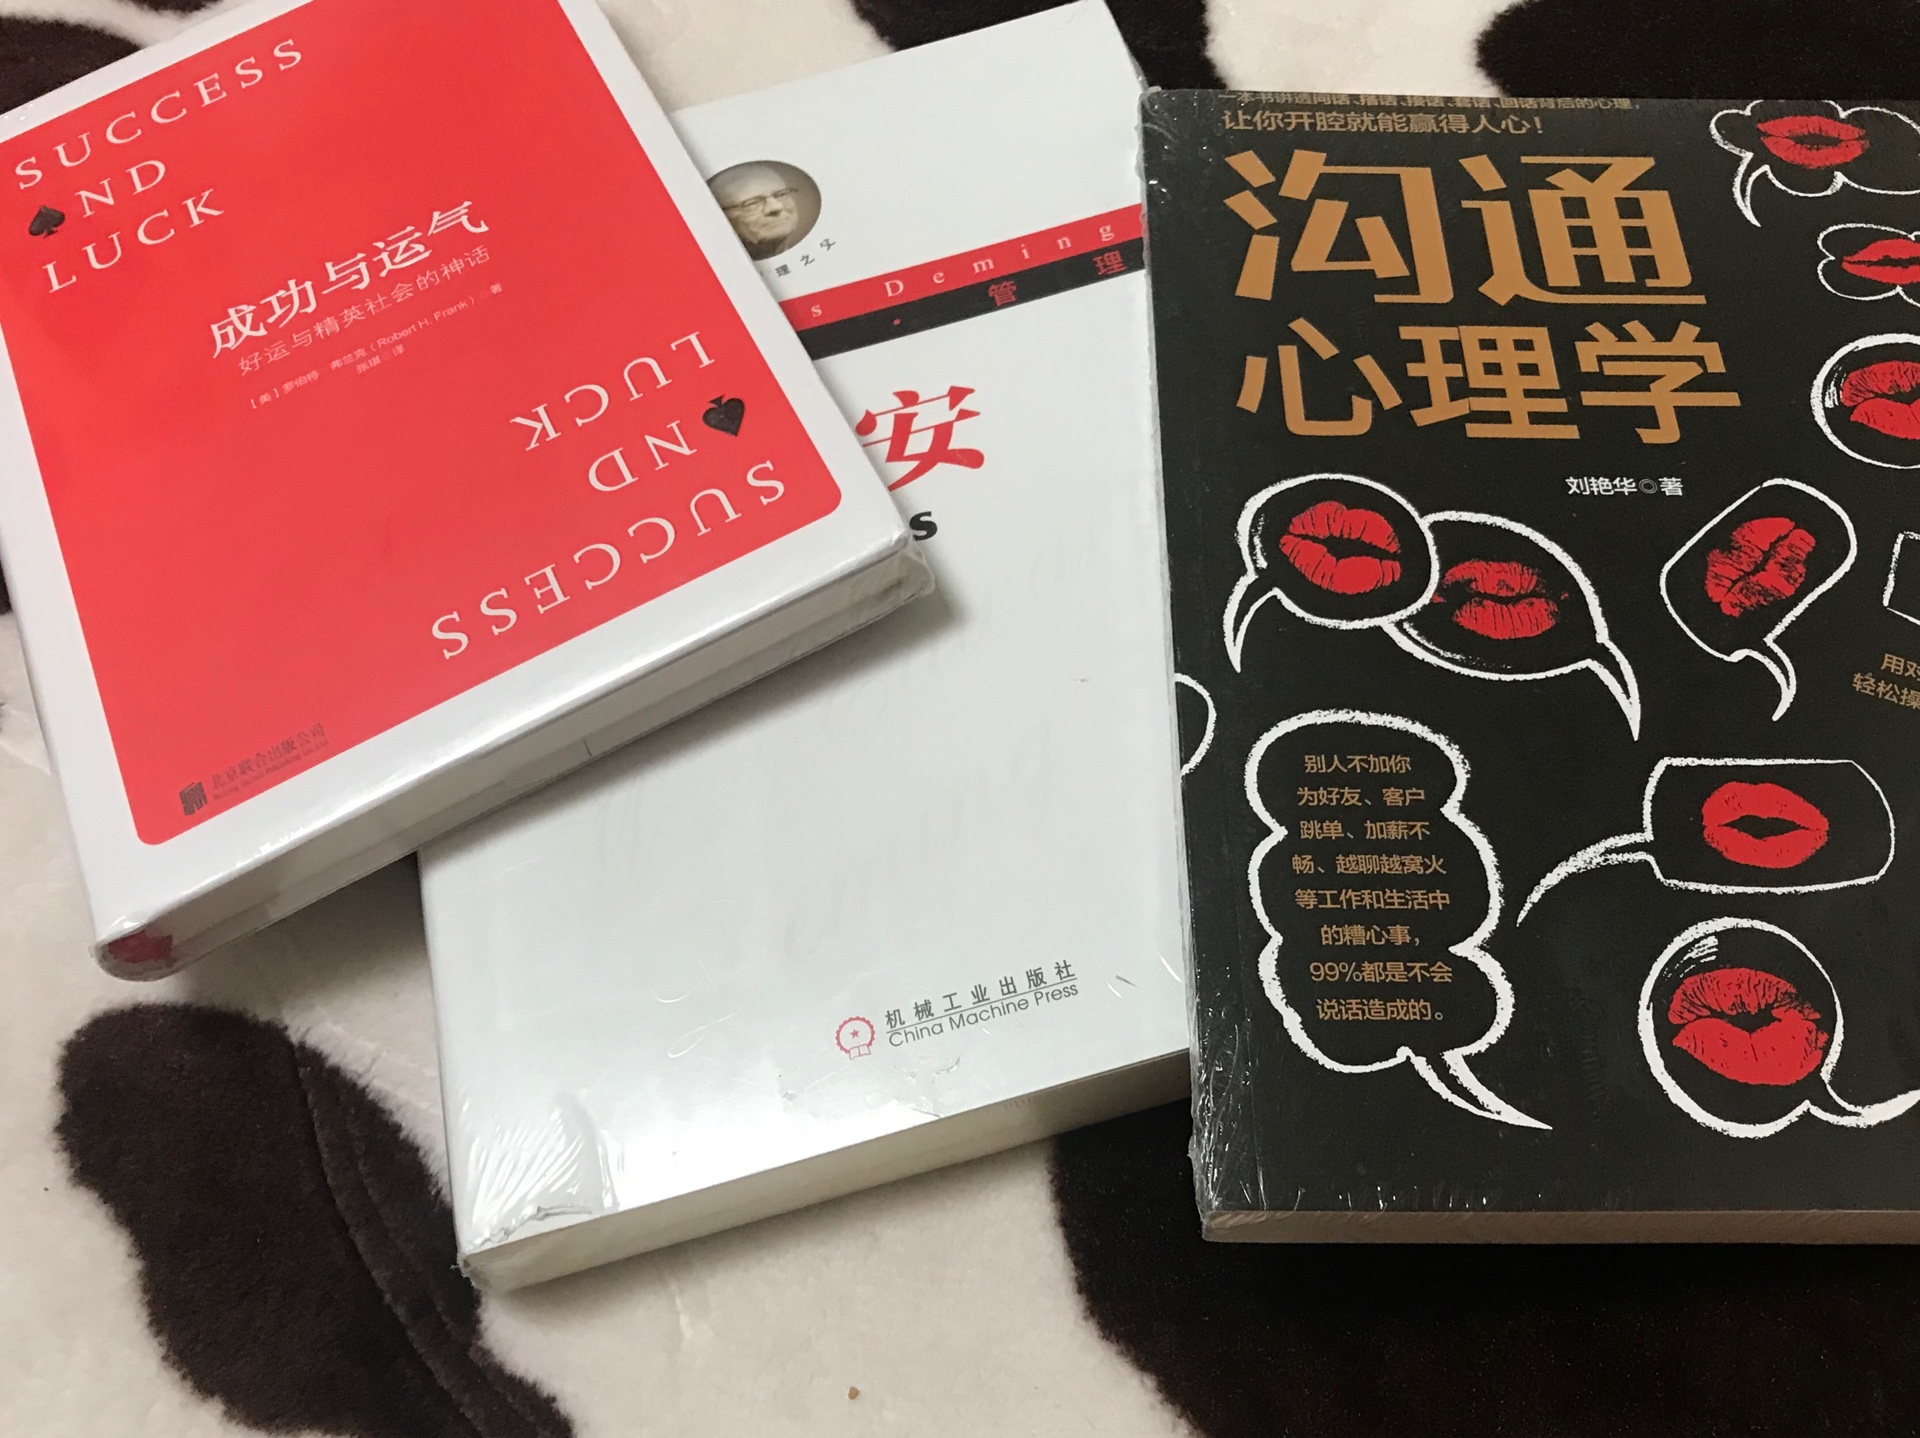 一次买了三本书，好好学习。希望能学到东西！